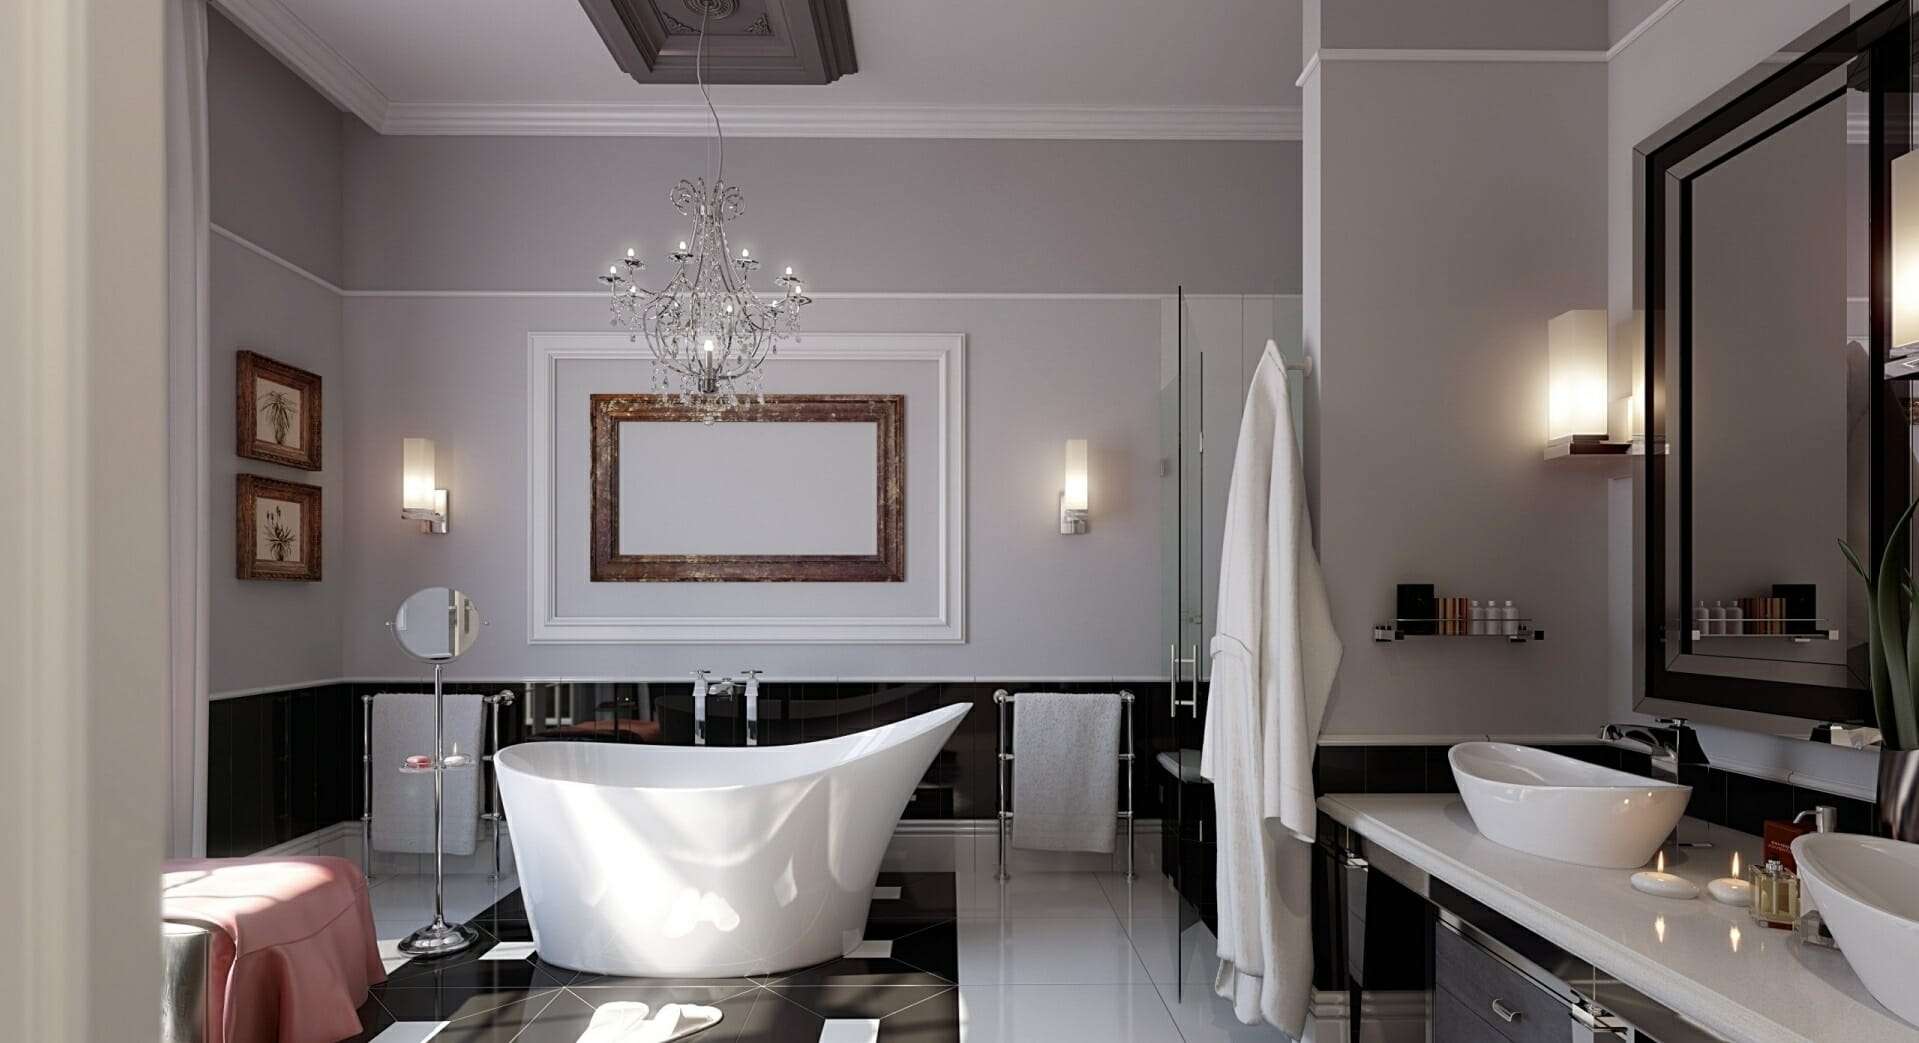 Stunning Tile Designs For Your Bathroom Remodel Modernize